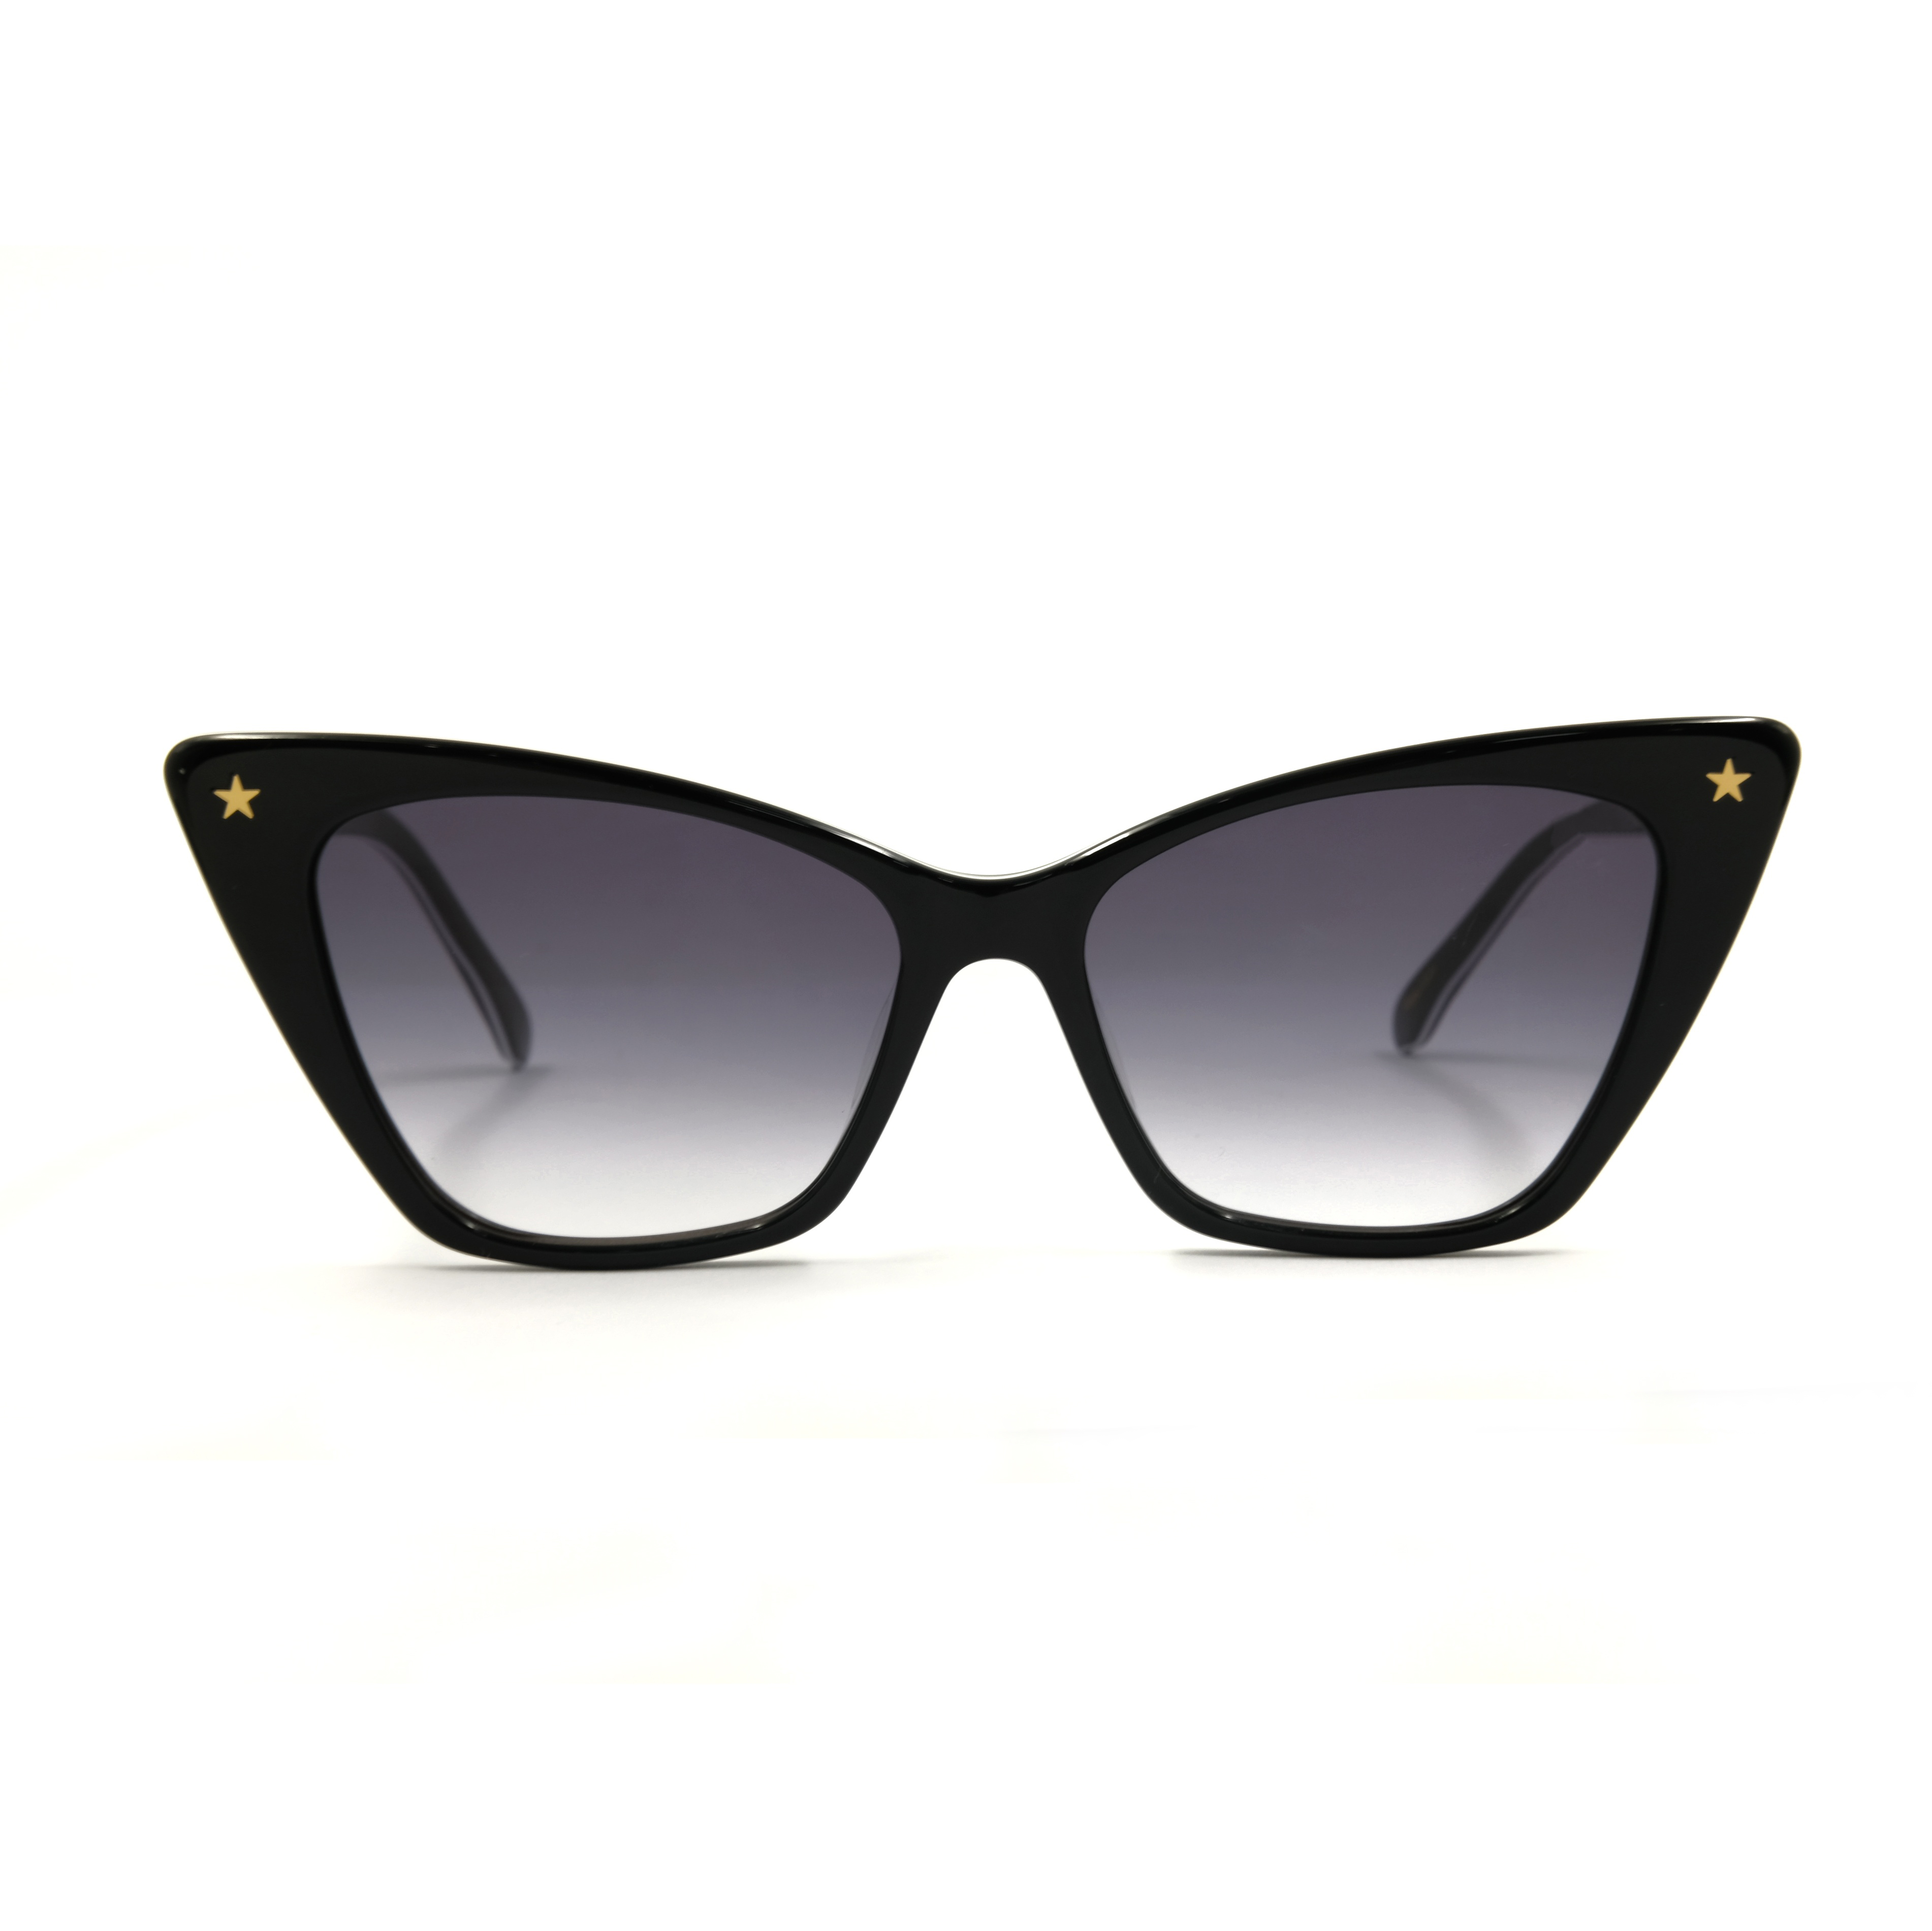 Gafas de sol de acetato negro Gafas de sol de ojo de gato Crea tus propias gafas de sol Fabricante China